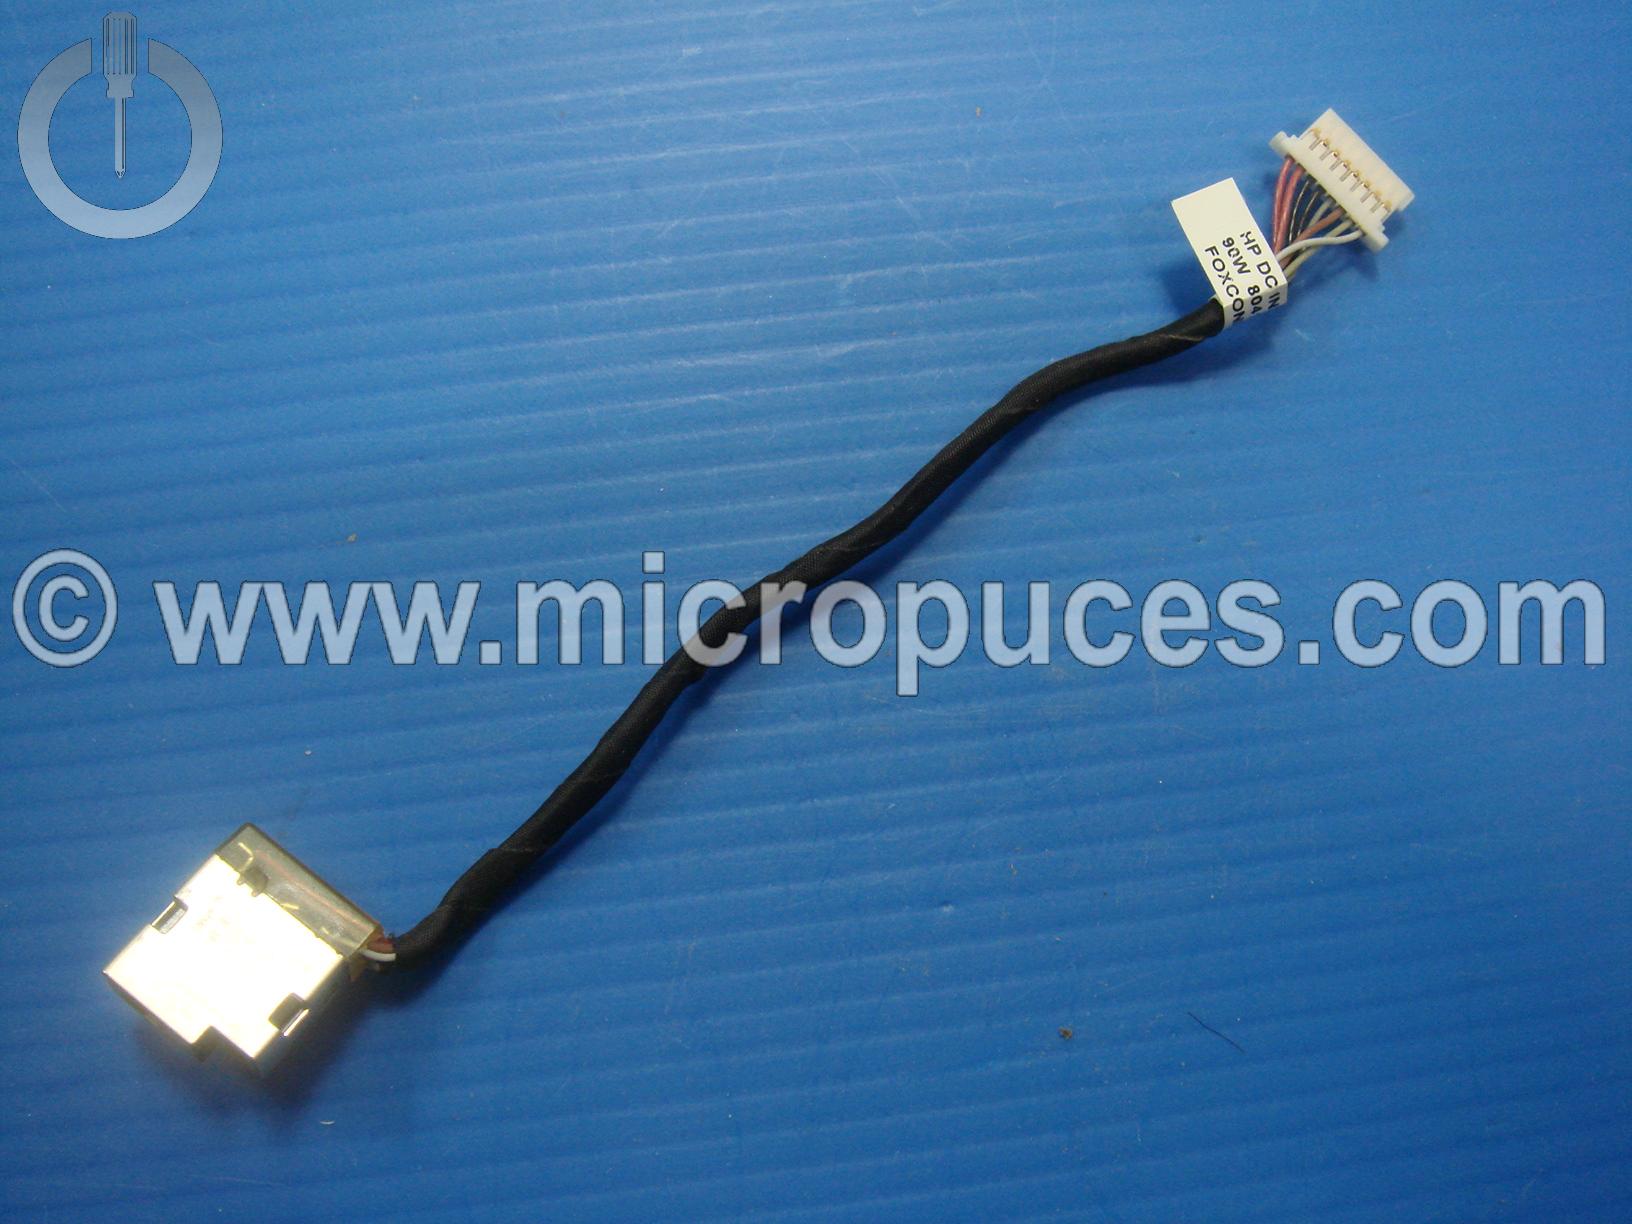 Cable alimentation pour HP Probook 450 G3, 455 G3, 470 G3